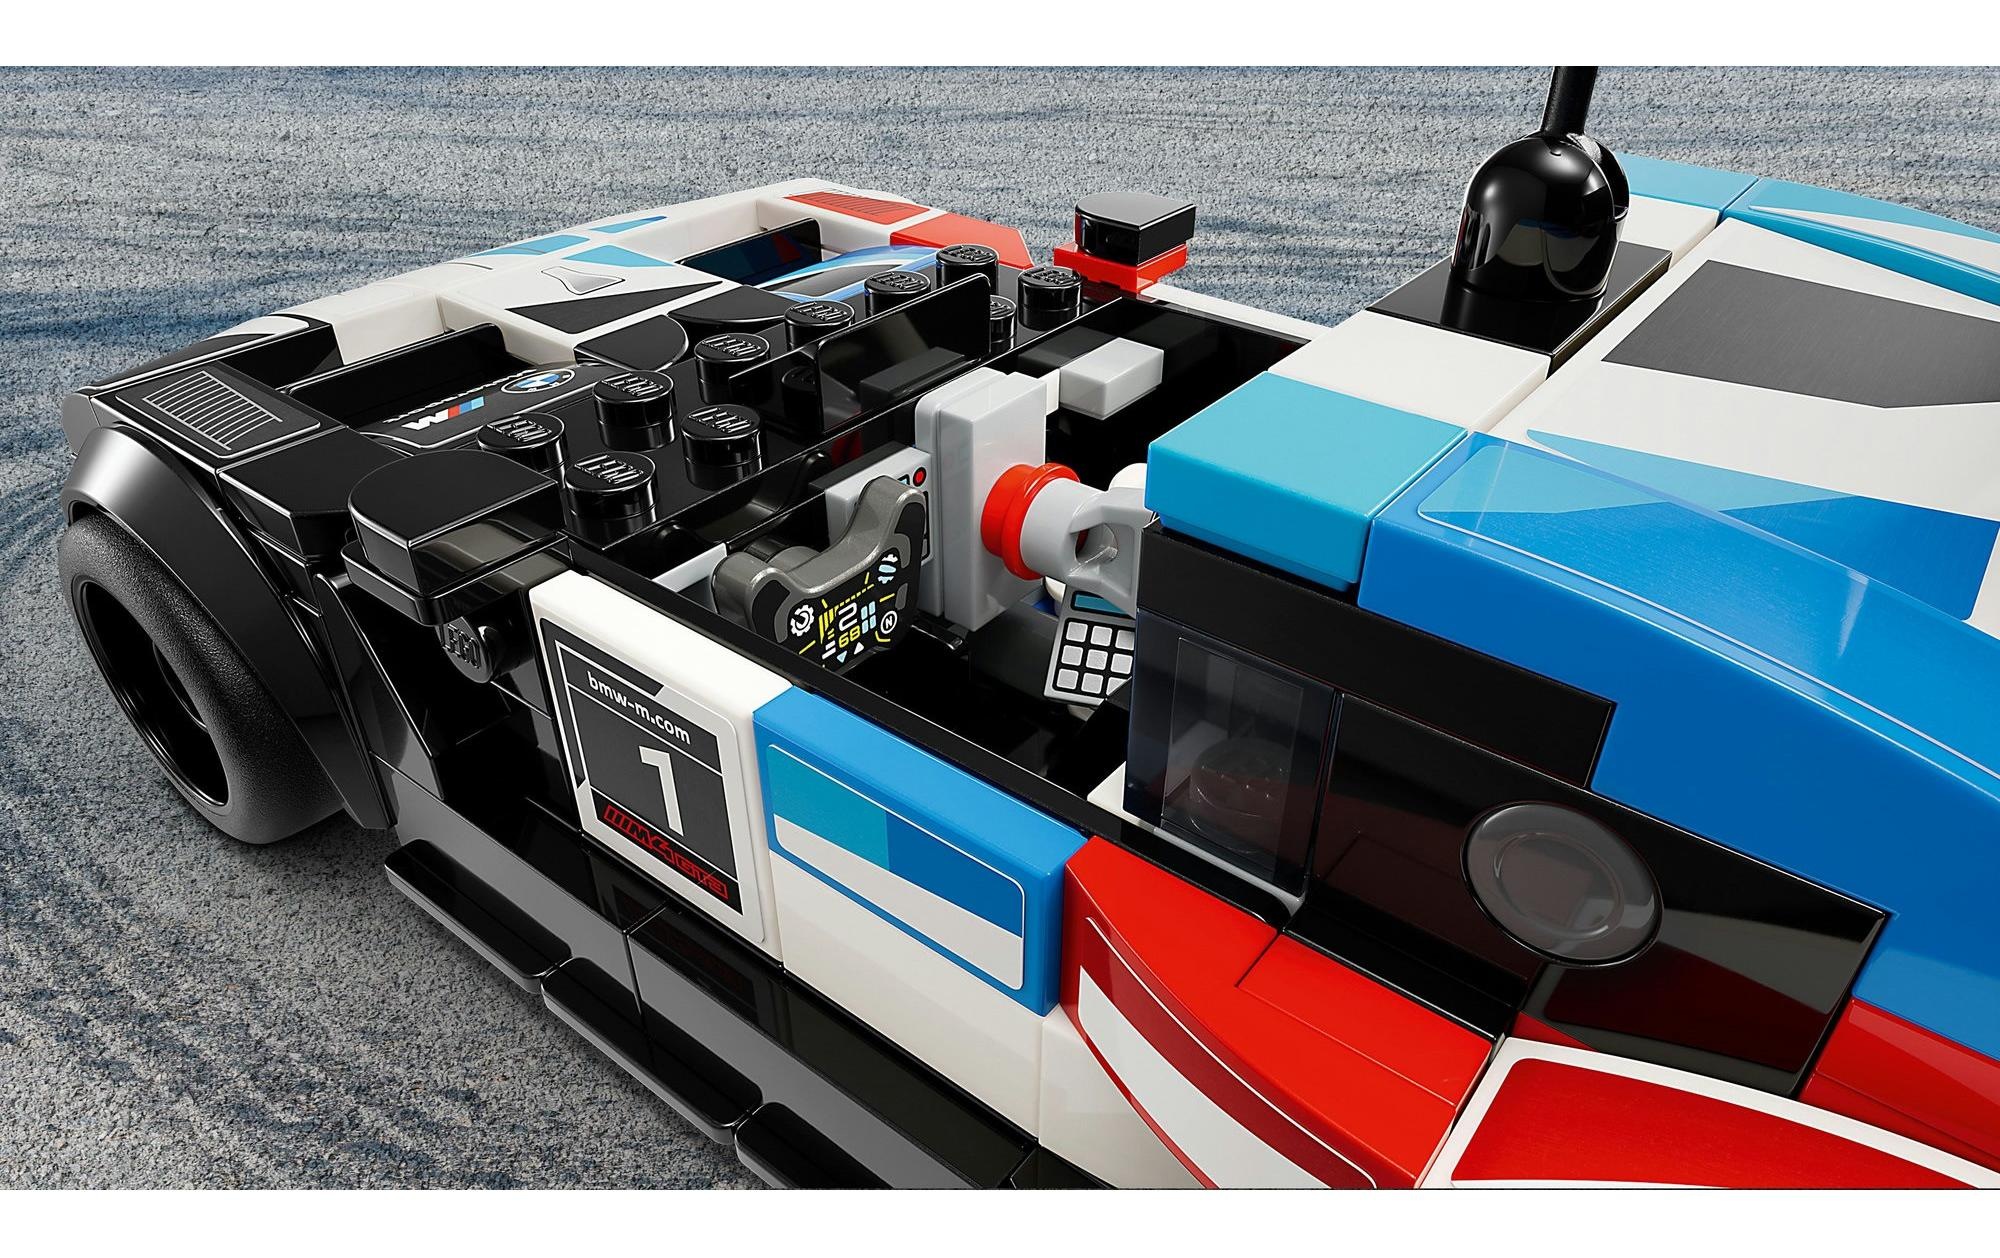 LEGO® Spielbausteine »Speed Champions BMW M4 GT3 & BMW M Hybrid V8 Rennwagen«, (676 St.)